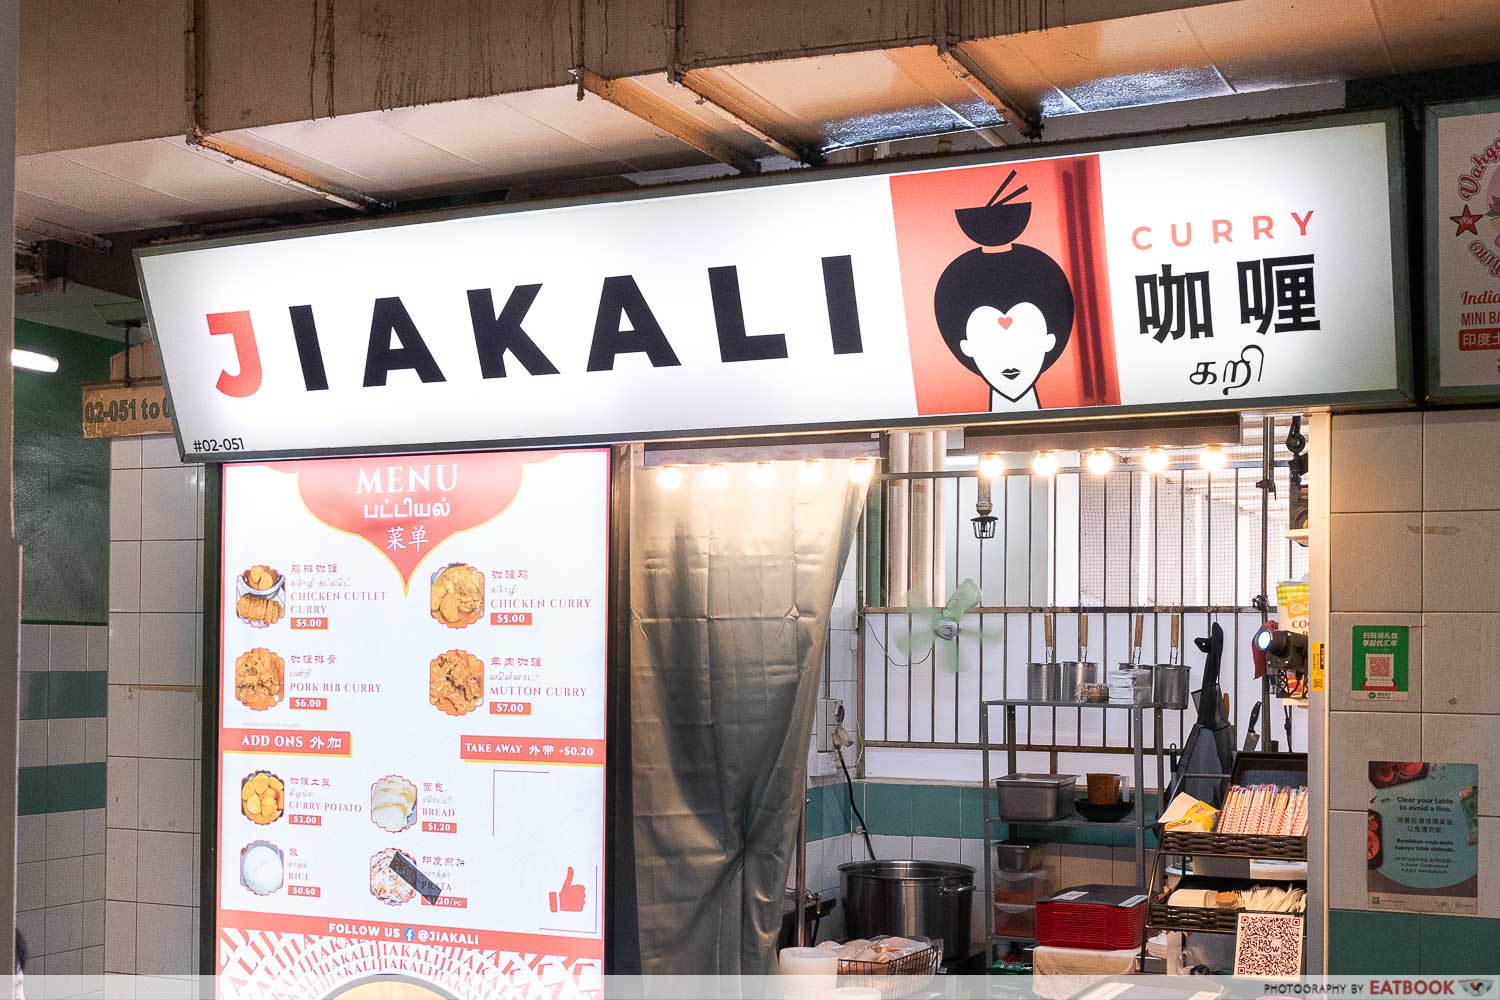 jiakali-stall-front